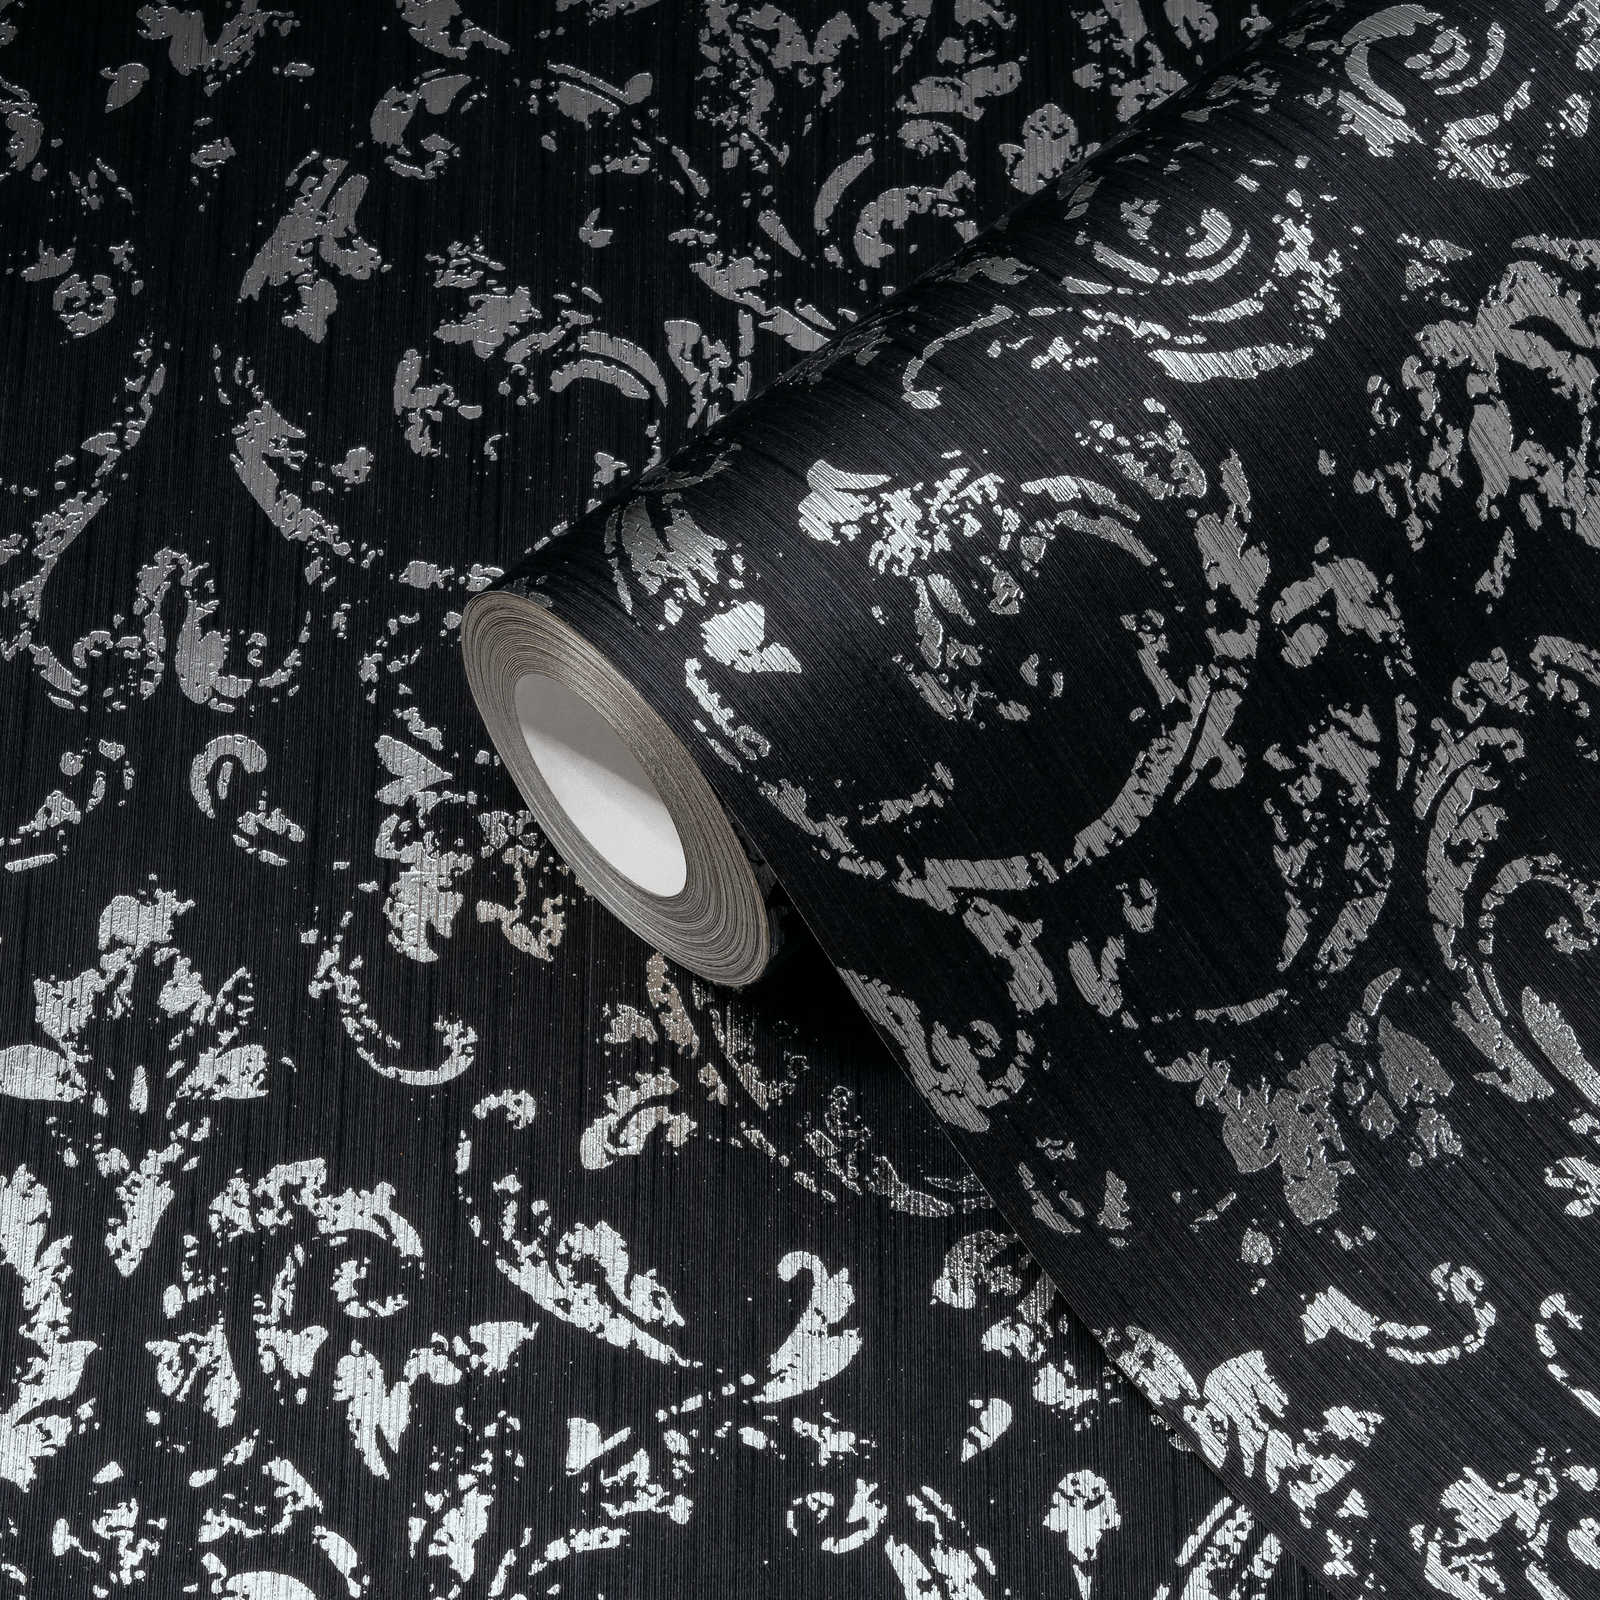             Behang met zilveren ornamenten in used look - zwart, zilver
        